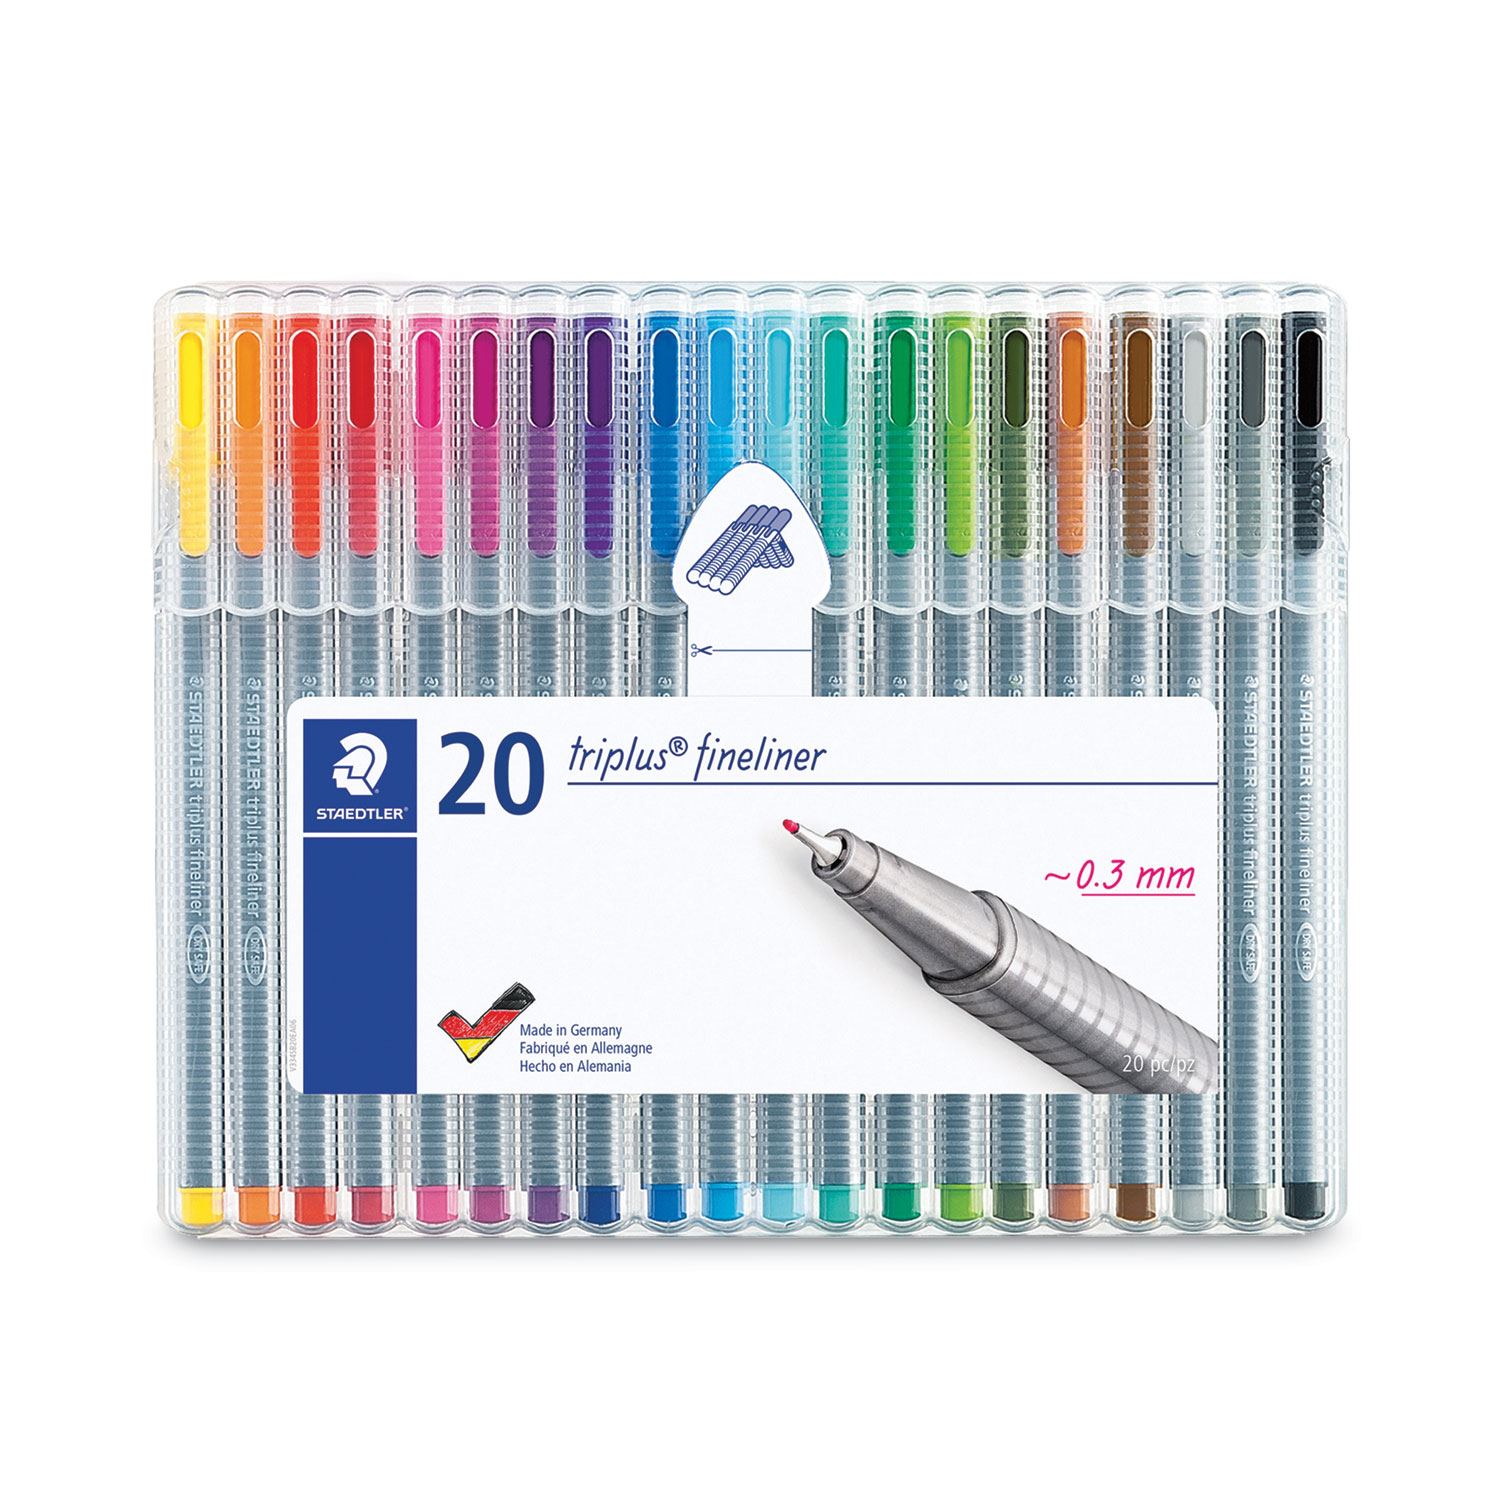 Pack of 1 Fineliner Pens 0.4mm Fine Tip Marker Drawing Color Pens